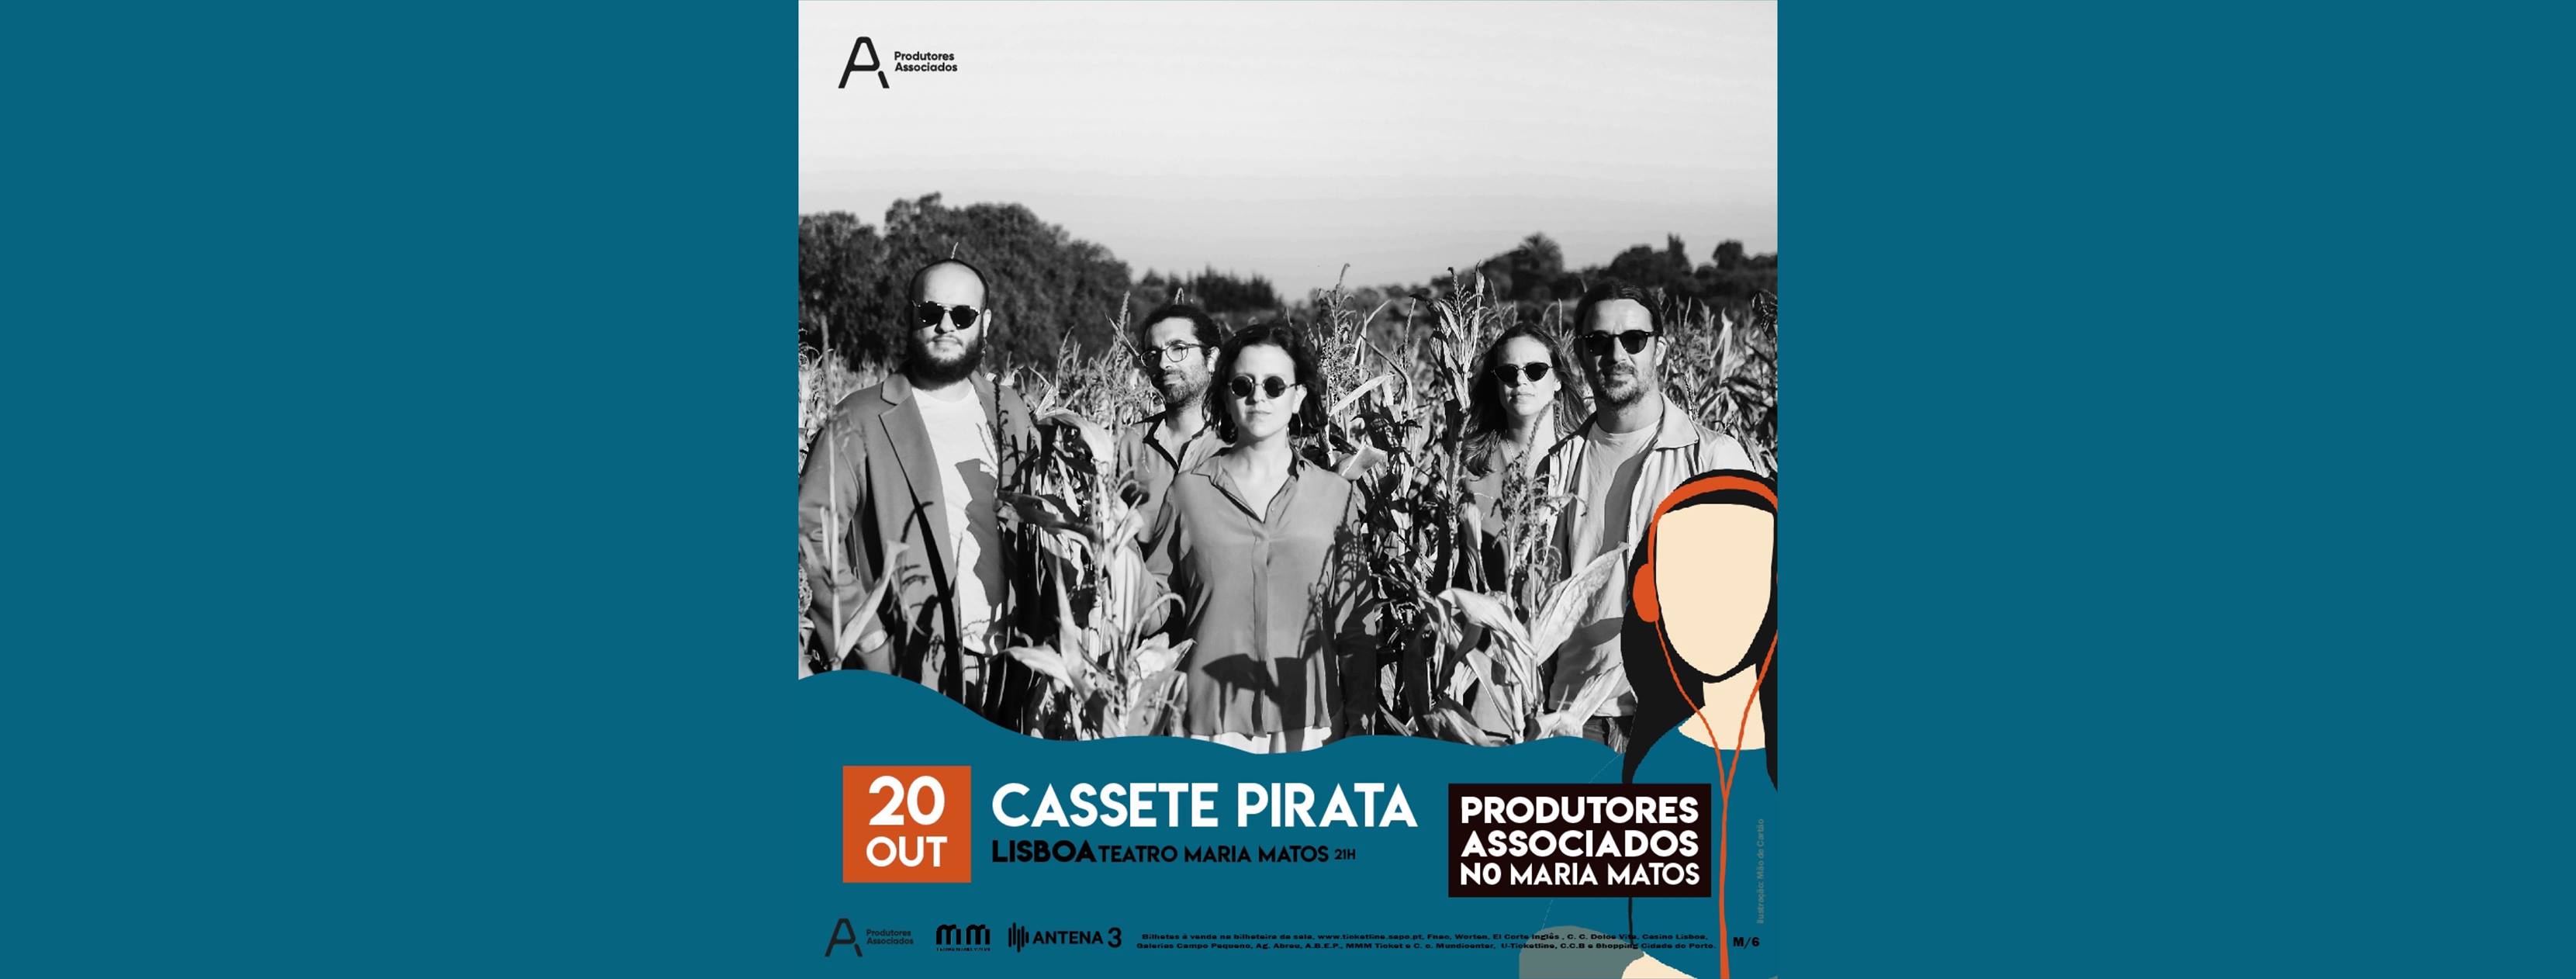 CASSETE PIRATA - Produtores Associados no Maria Matos